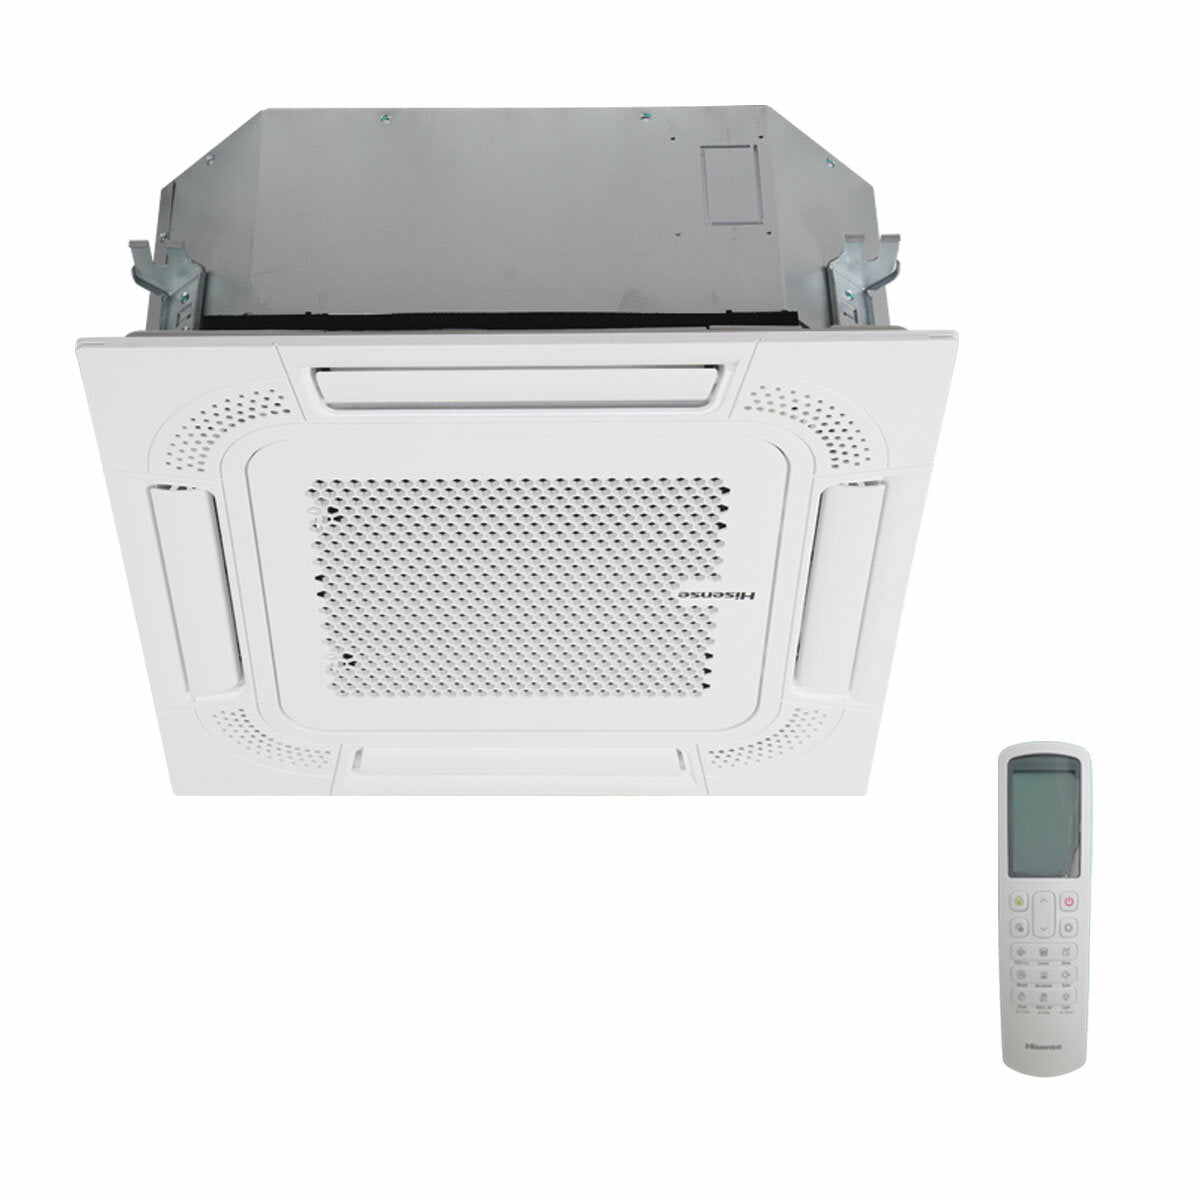 Hisense air conditioner Cassette ACT dual split 12000+12000 BTU inverter A++ outdoor unit 5.5 kW